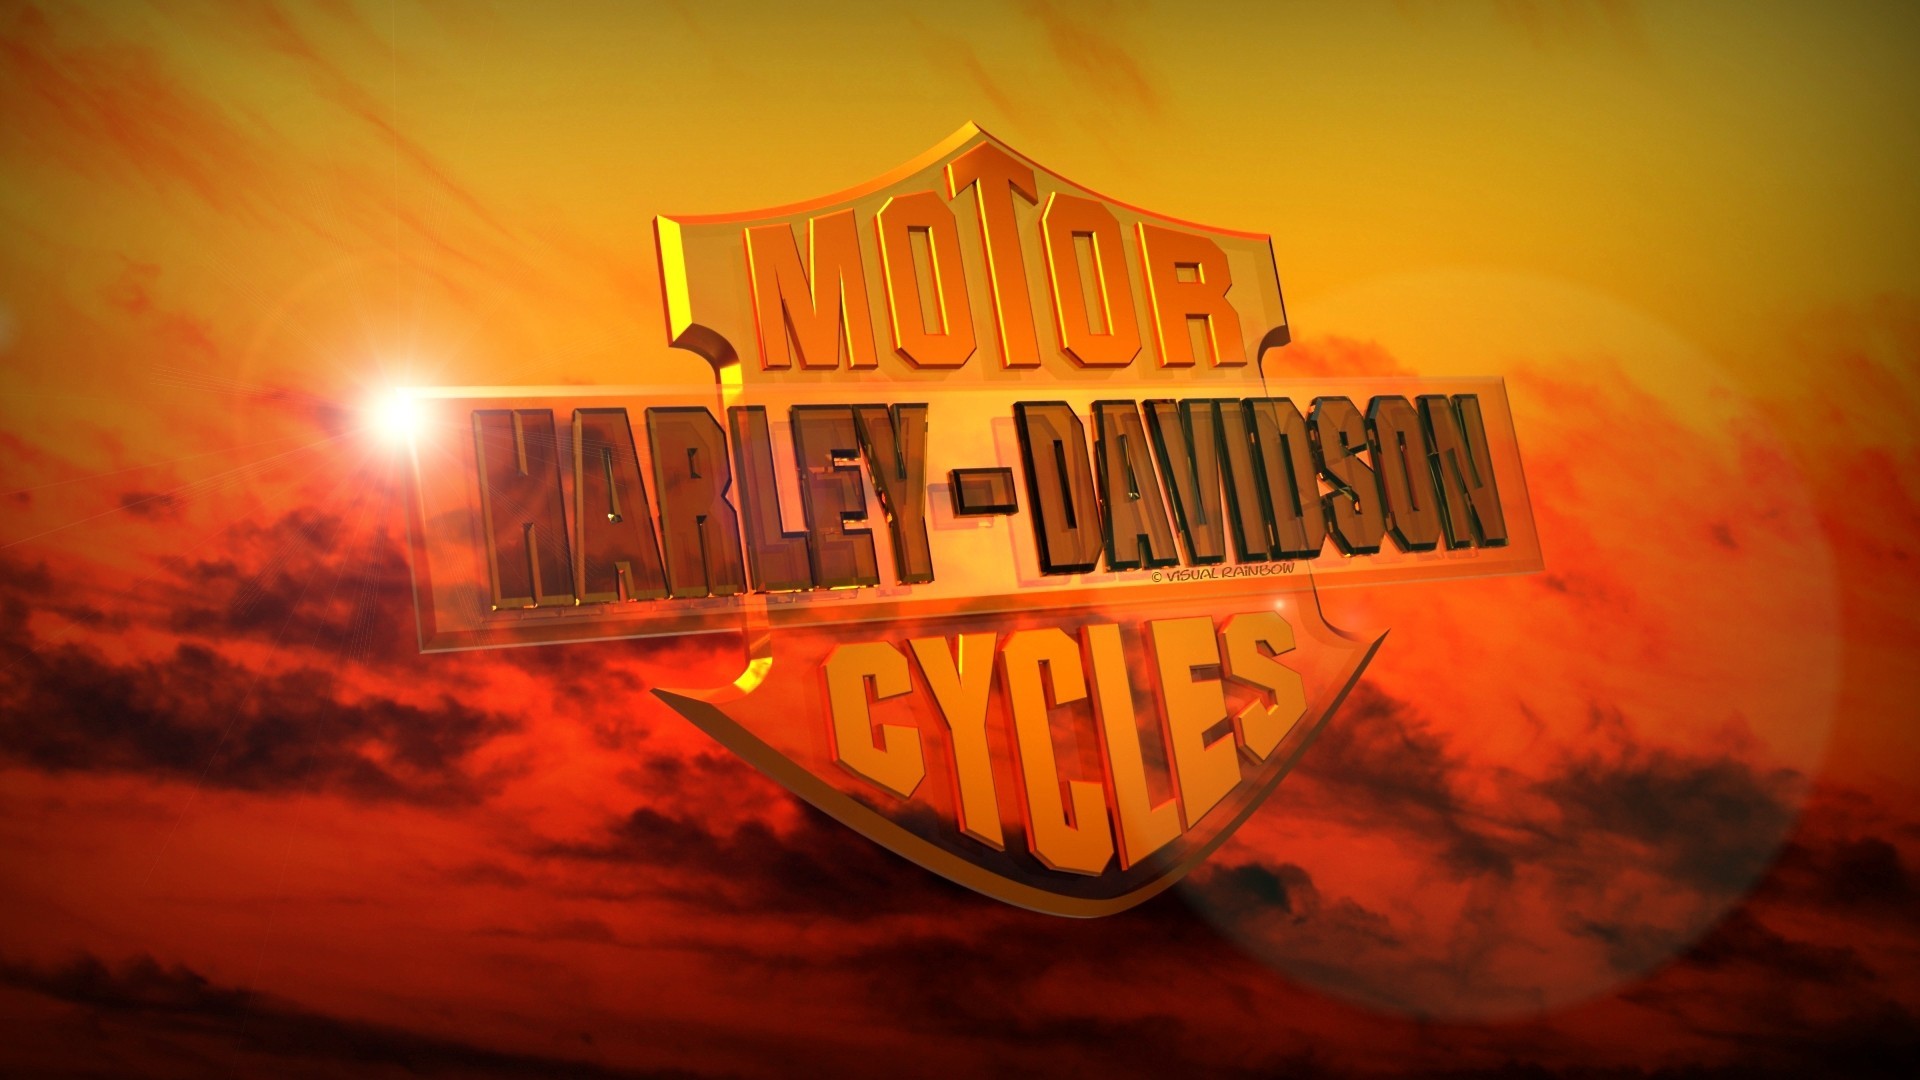 Miller Harley Davidson Sunset Wallpaper For iPhone Hq Background